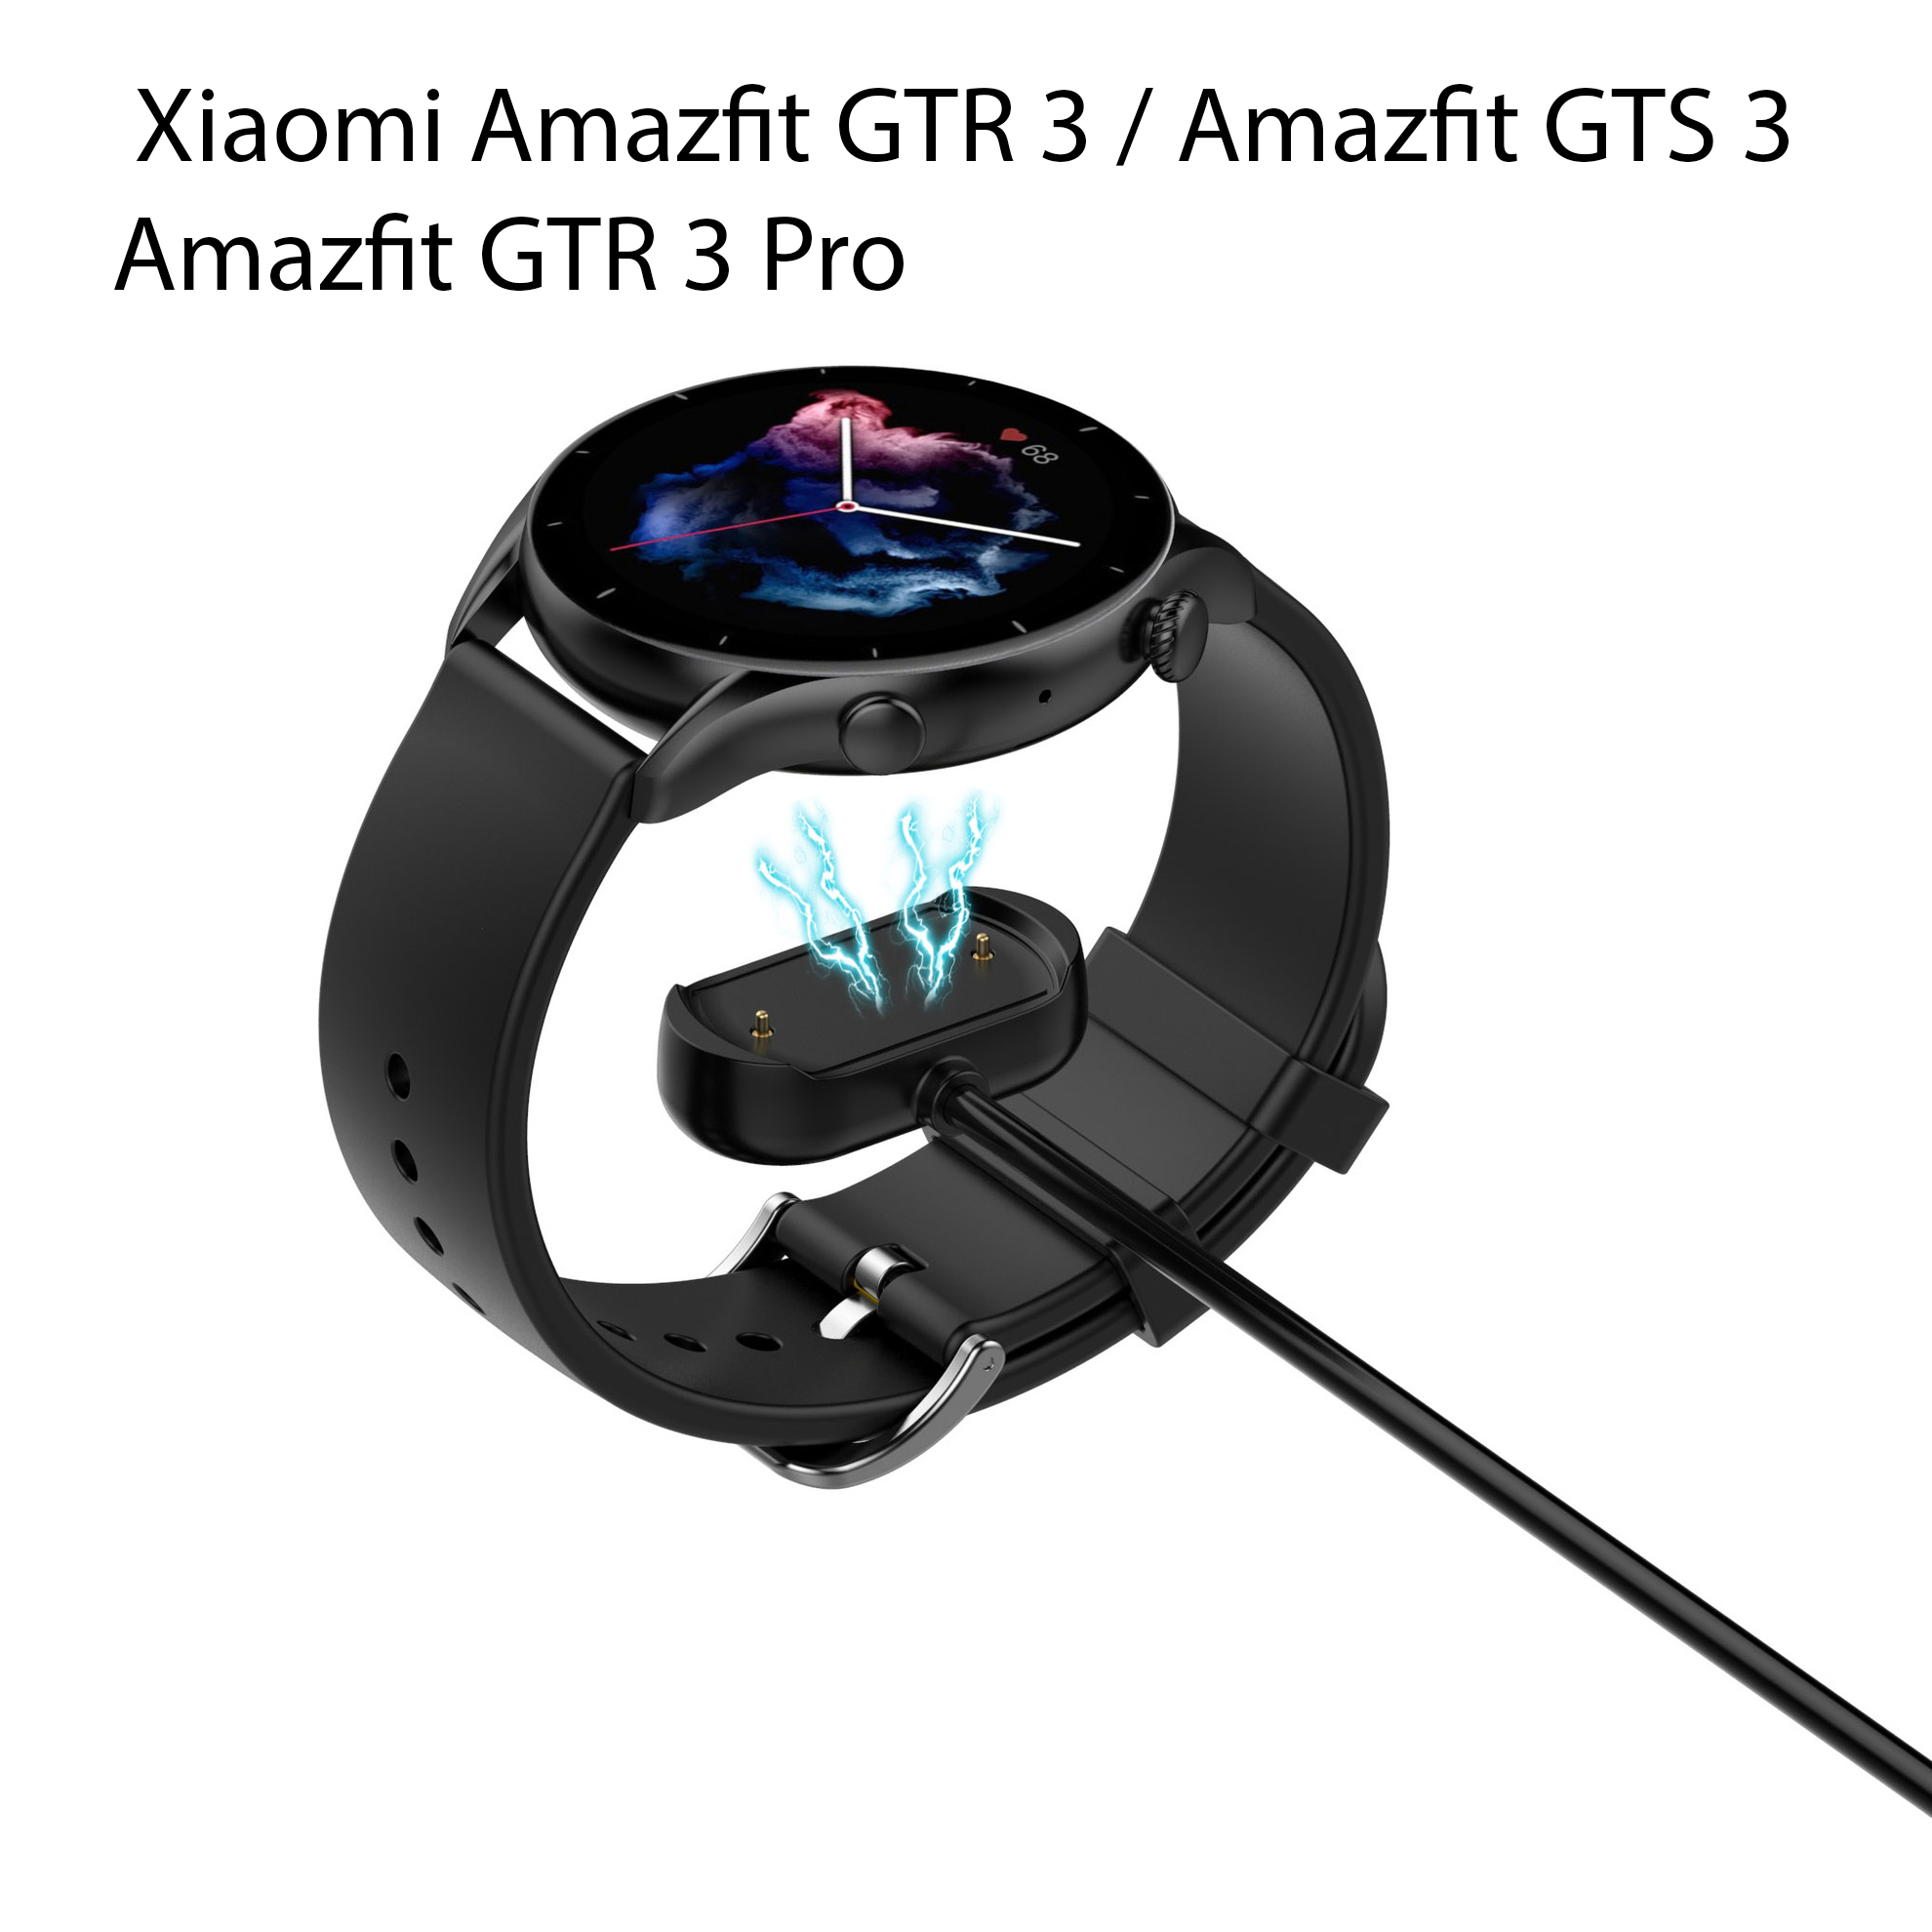 Dây Sạc Thay Thế Dành Cho Đồng Hồ Thông Minh Xiaomi Amazfit GTR 3 / Amazfit GTS 3 / Amazfit GTR 3 Pro 1 Mét